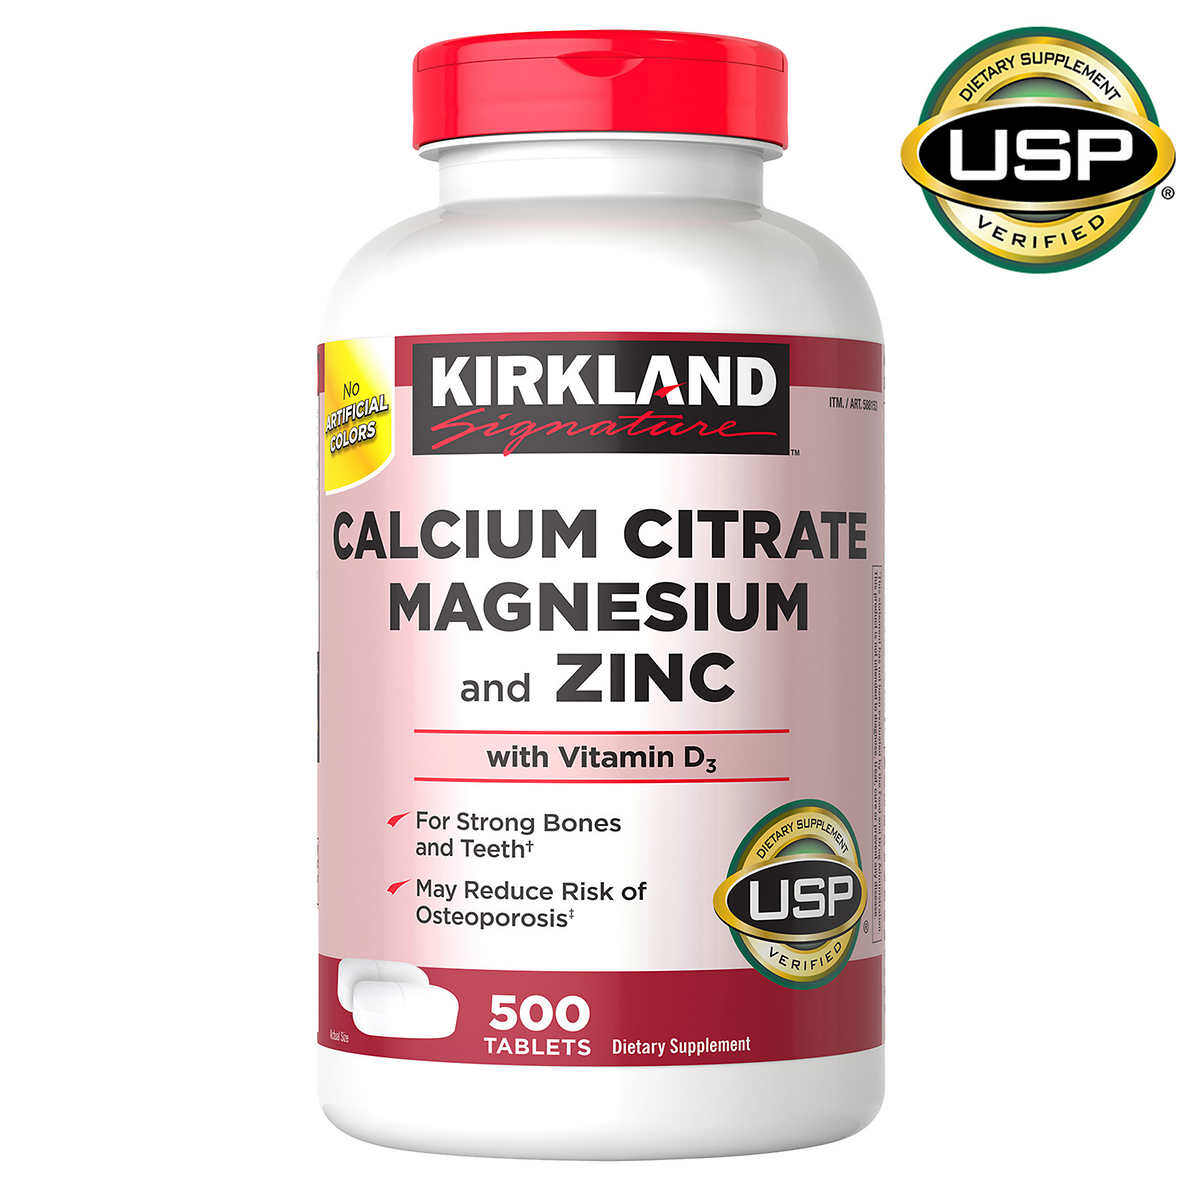 Kirkland Signature Calcium Citrate Magnesium and Zinc with Vitamin D3 500